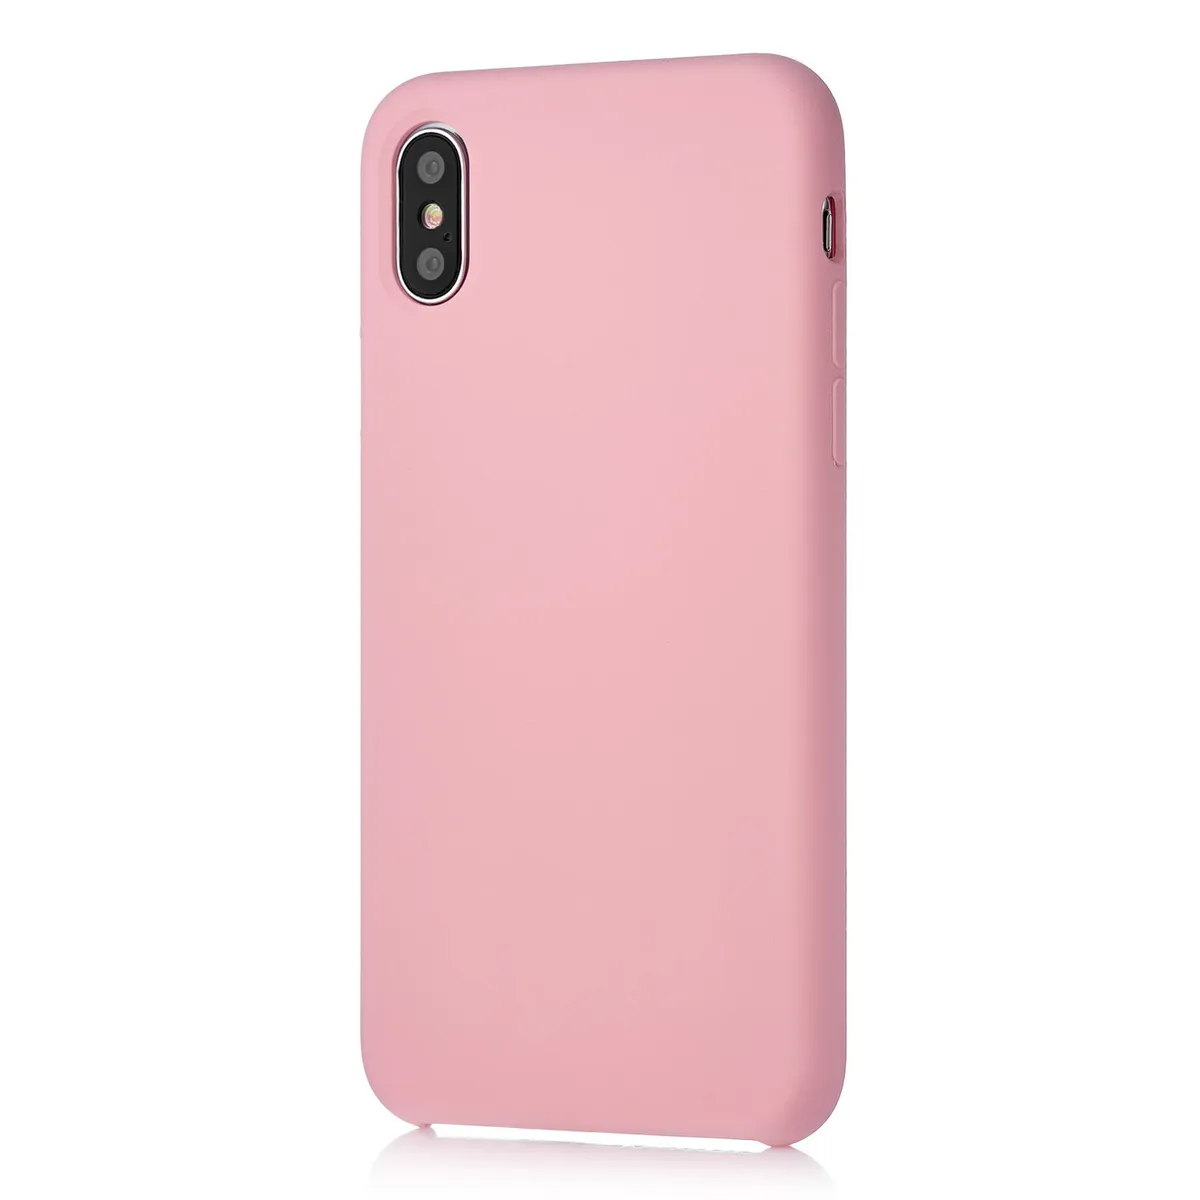 Чехол uBear iPhone X Touch Case (CS27RO01-I10) силиконовый, розовый